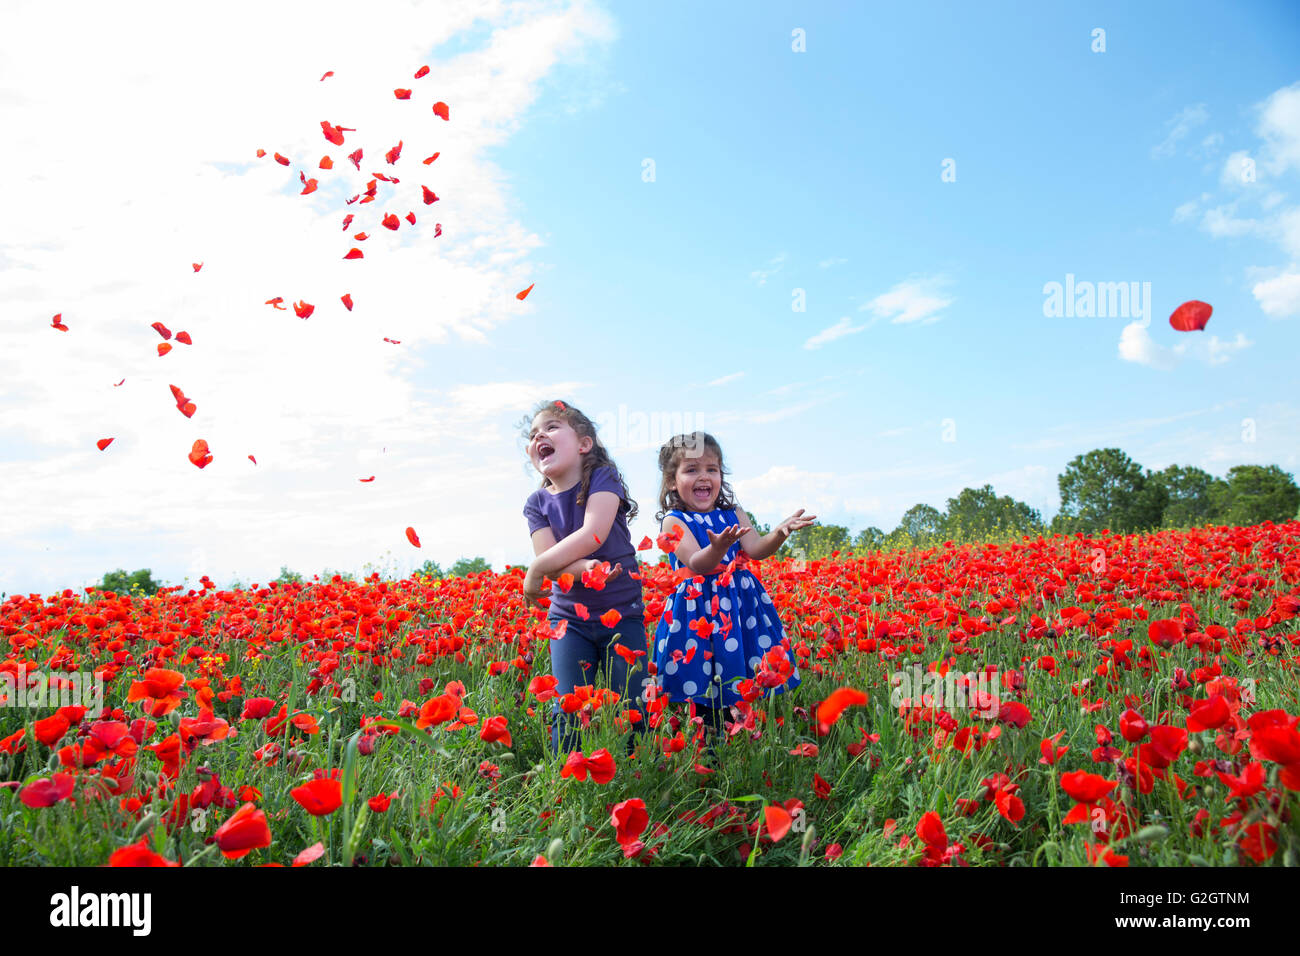 Zwei kleine Mädchen werfen Blütenblatt in Blumen Feld Stockfoto